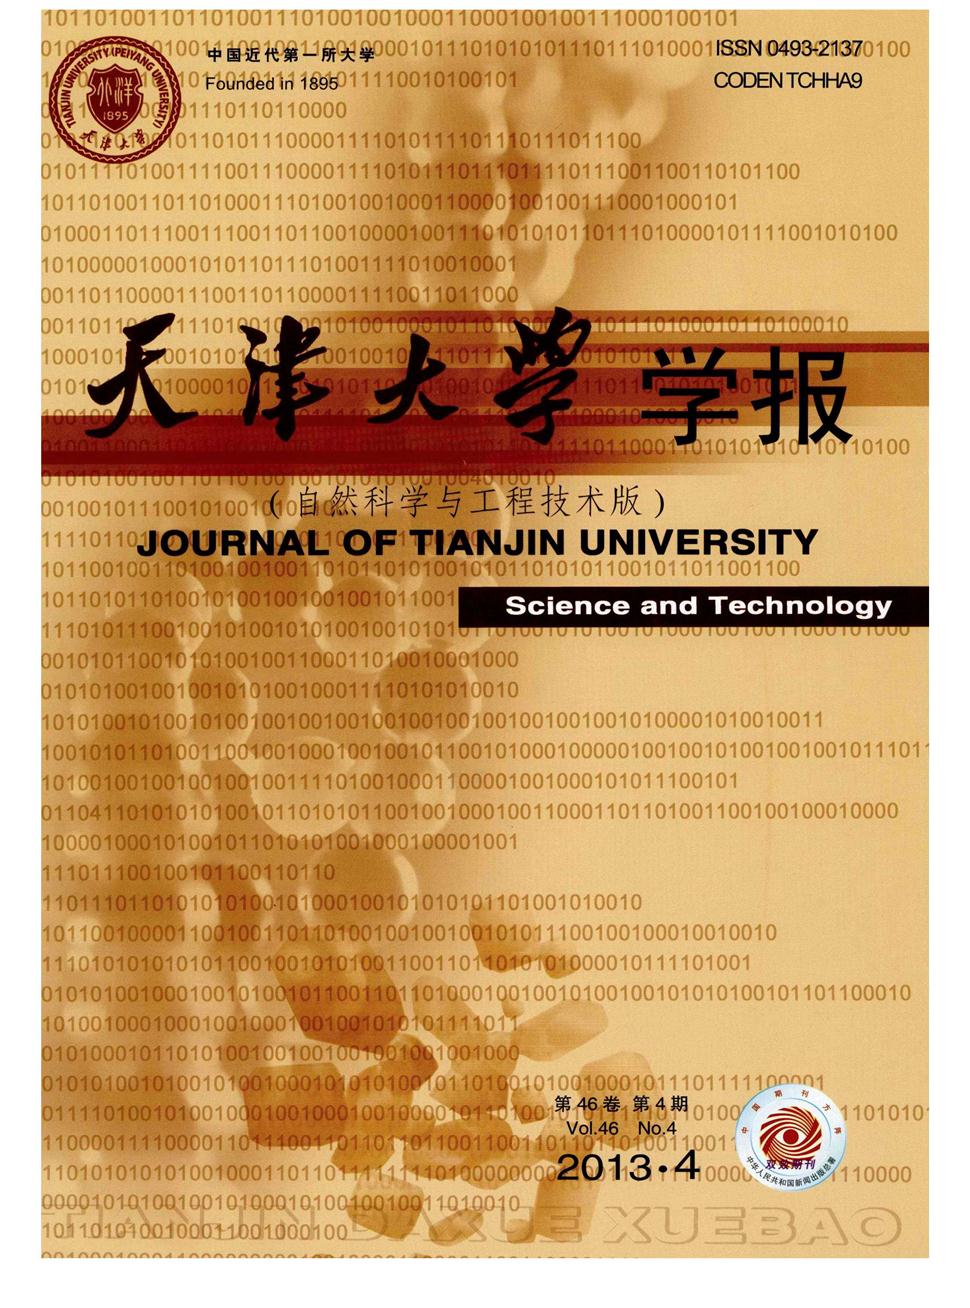 天津大学学报·自然科学与工程技术版杂志